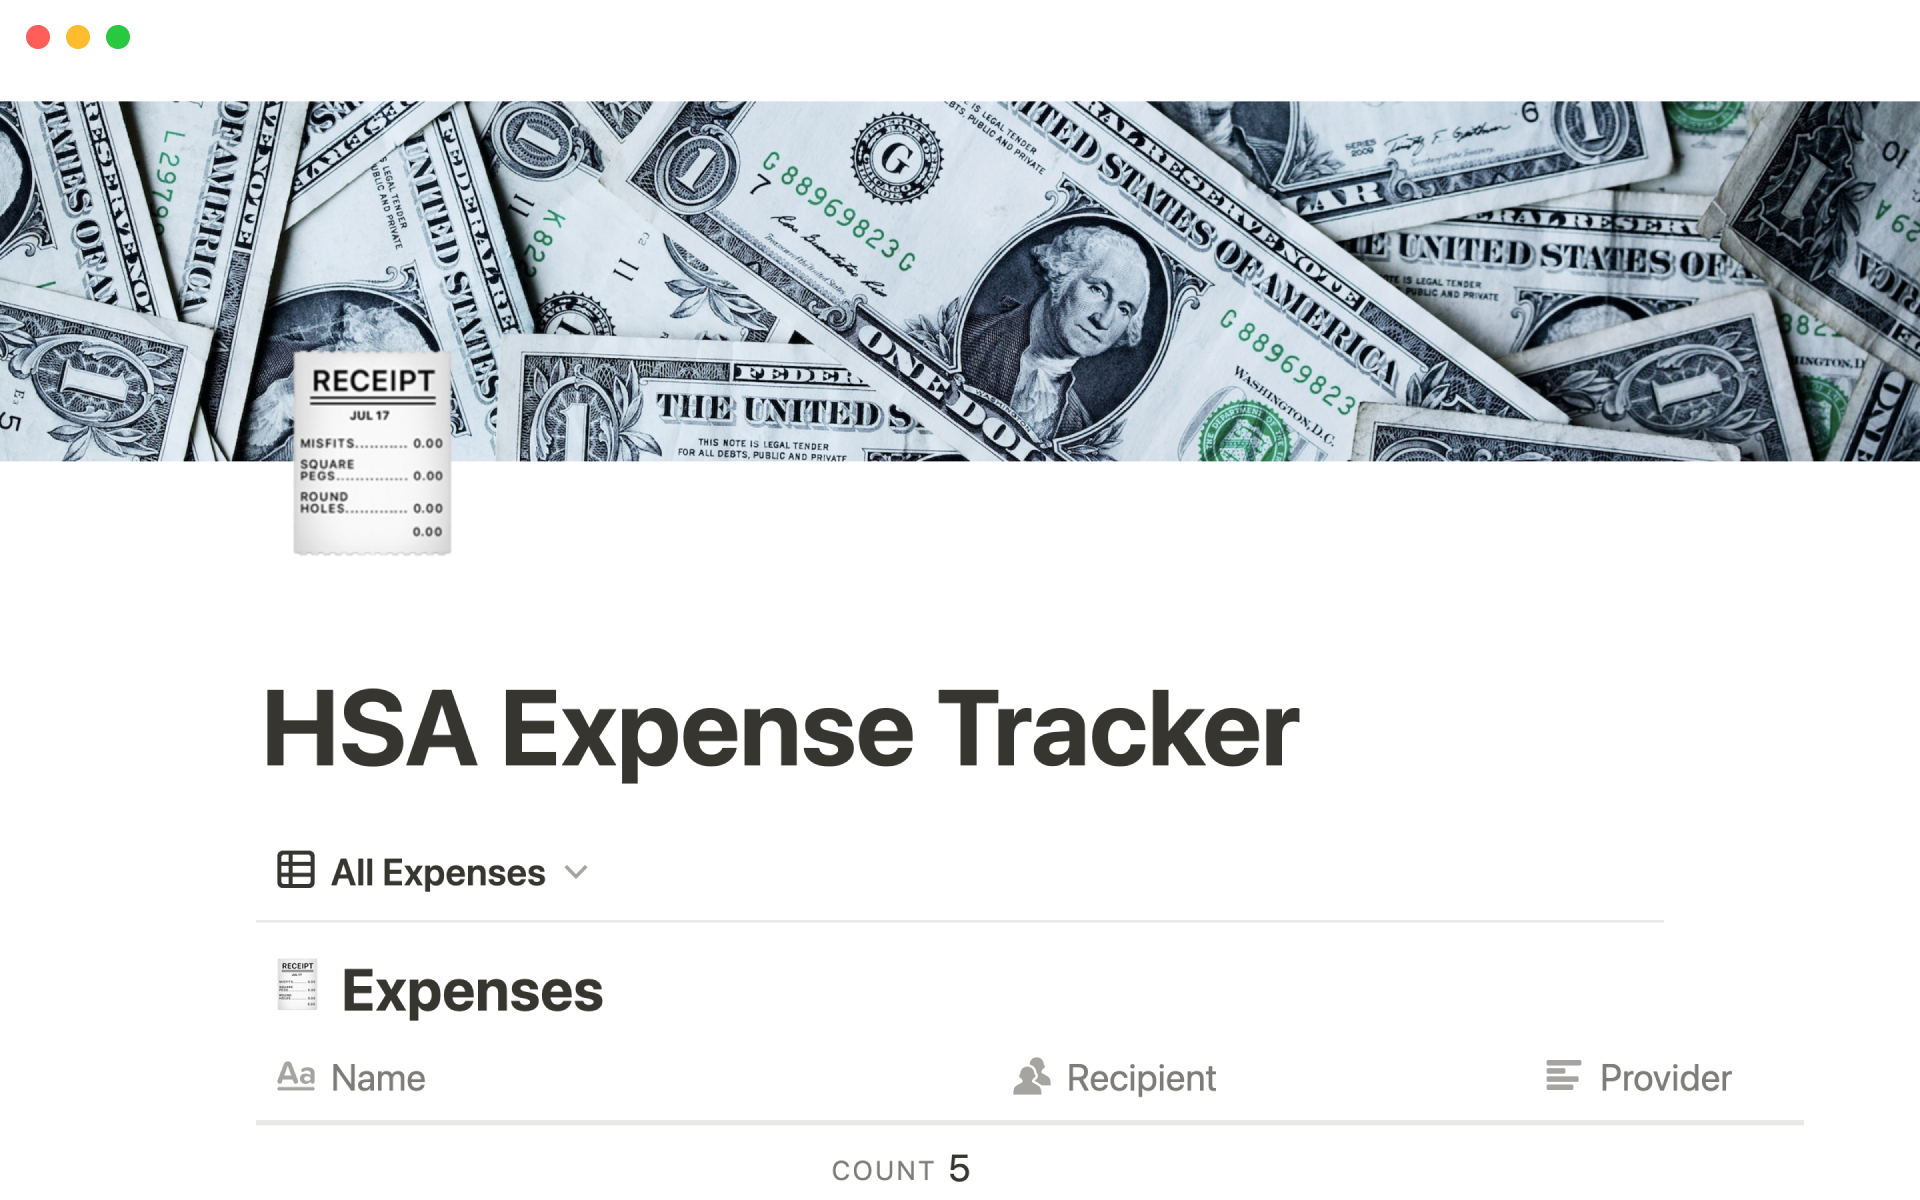 Uma prévia do modelo para HSA expense tracker